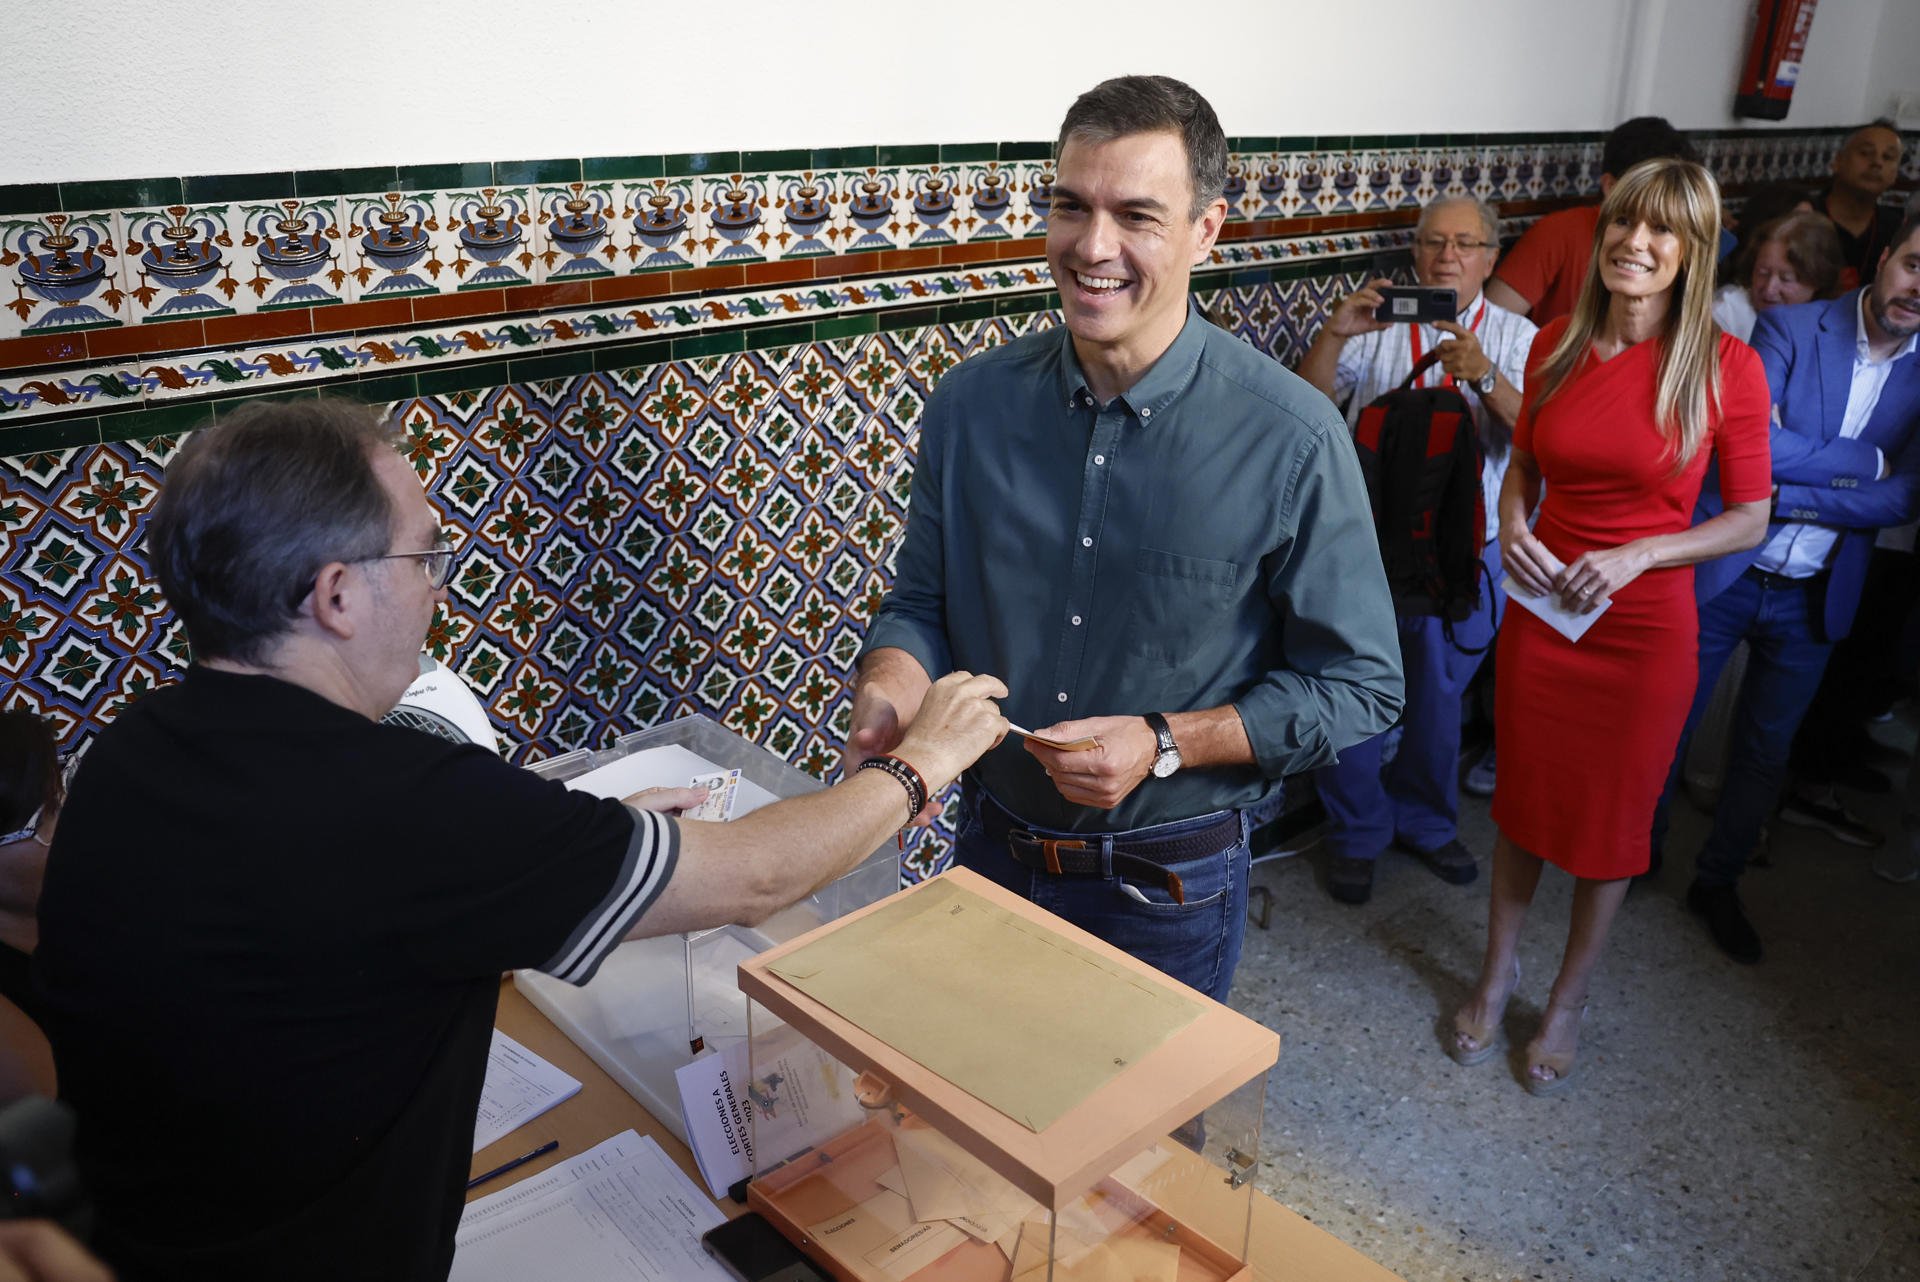 Pedro Sánchez vota entre crits de 'president' i 'fora': "Tinc bones vibracions" | VÍDEO